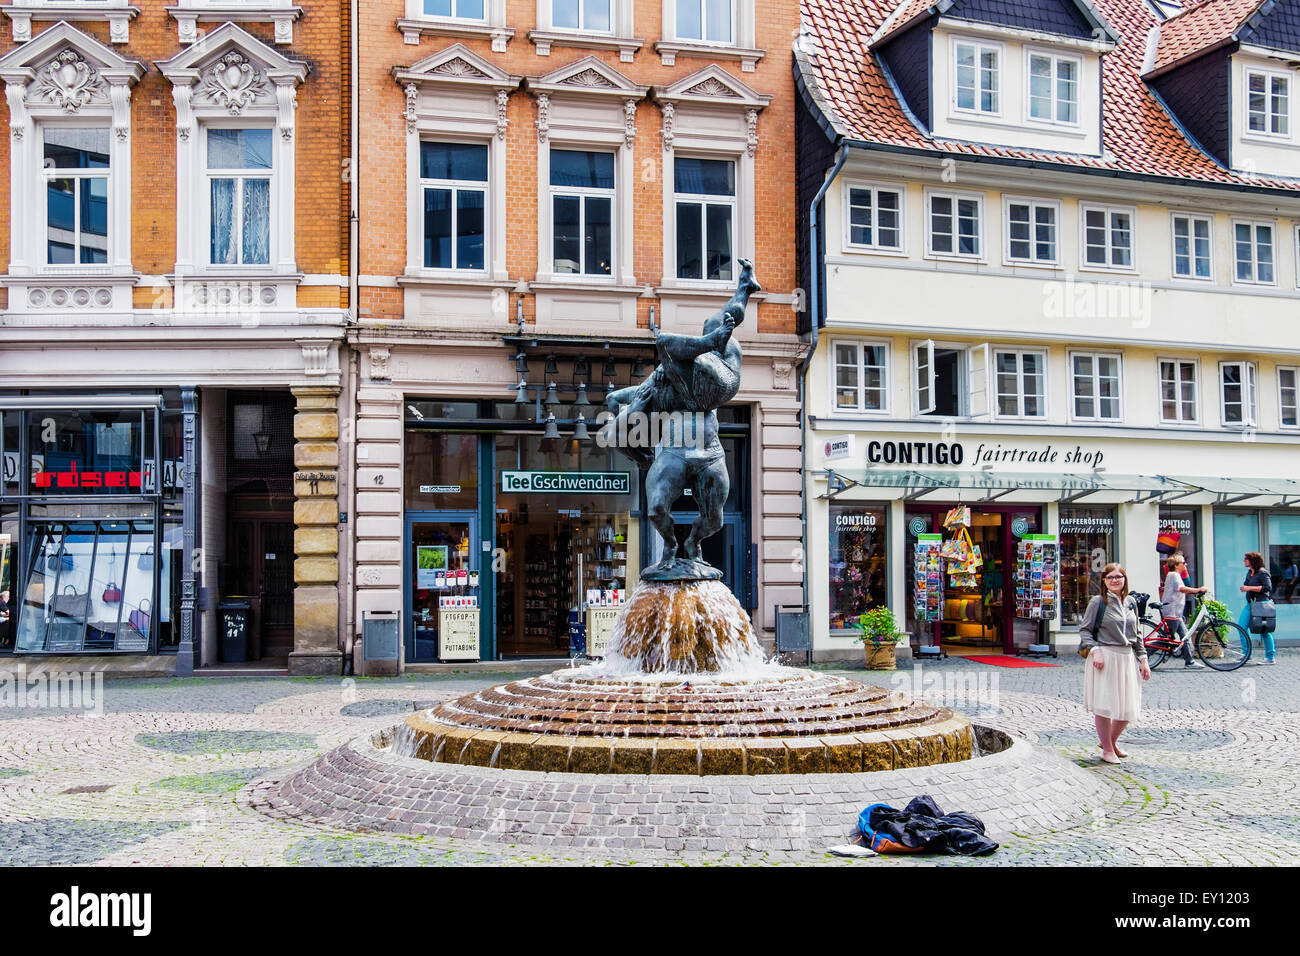 Braunschweig, du Nouveau-Brunswick, de l'Allemagne. Centre de la vieille ville et par le sculpteur fontaine lutteur, Juergen Weber Banque D'Images